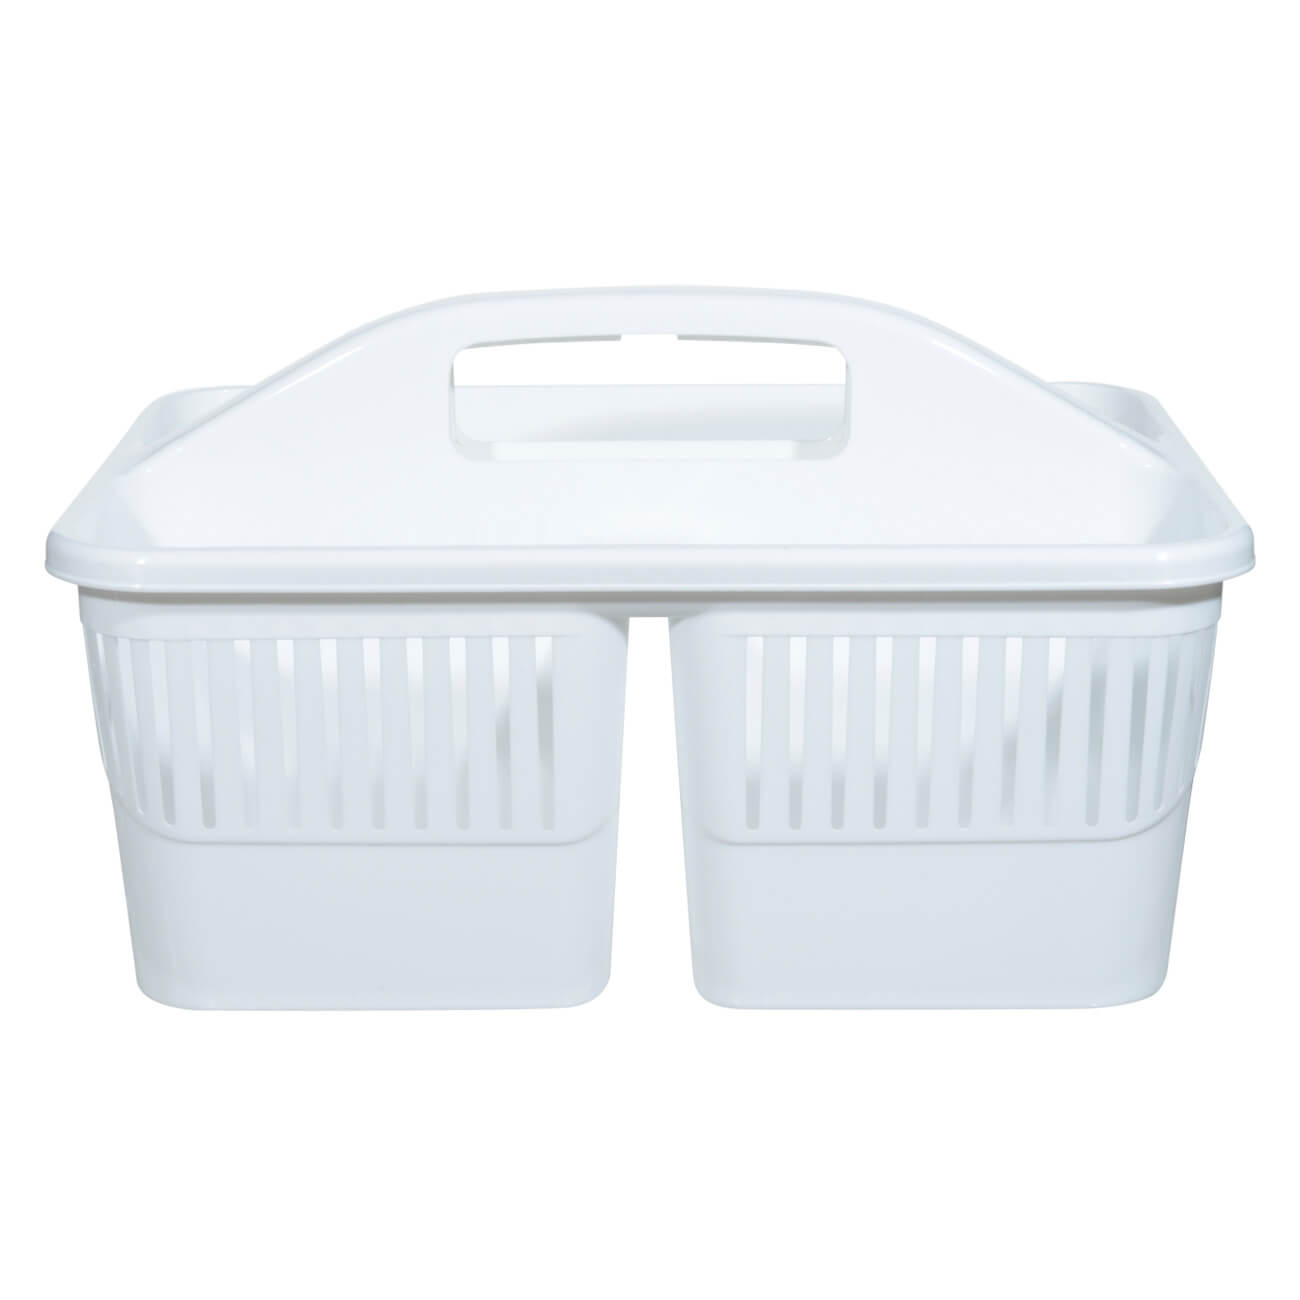 Органайзер для моющих средств, 23х30 см, переносной, пластик, белый, Compact органайзер для моющих средств 23х30 см переносной пластик белый compact